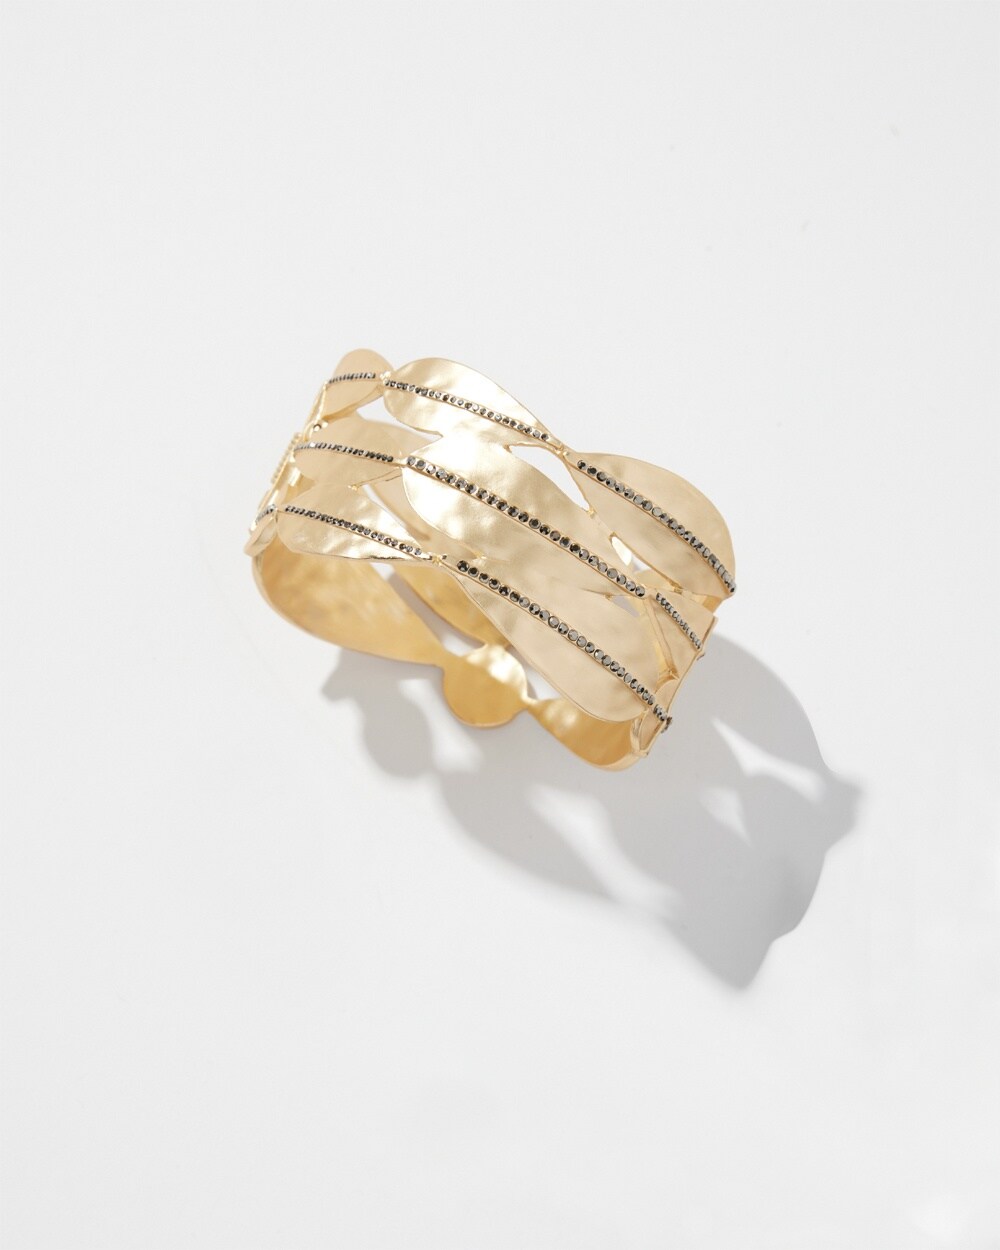 Gold Tone Pav\u00E9 Cuff Bracelet